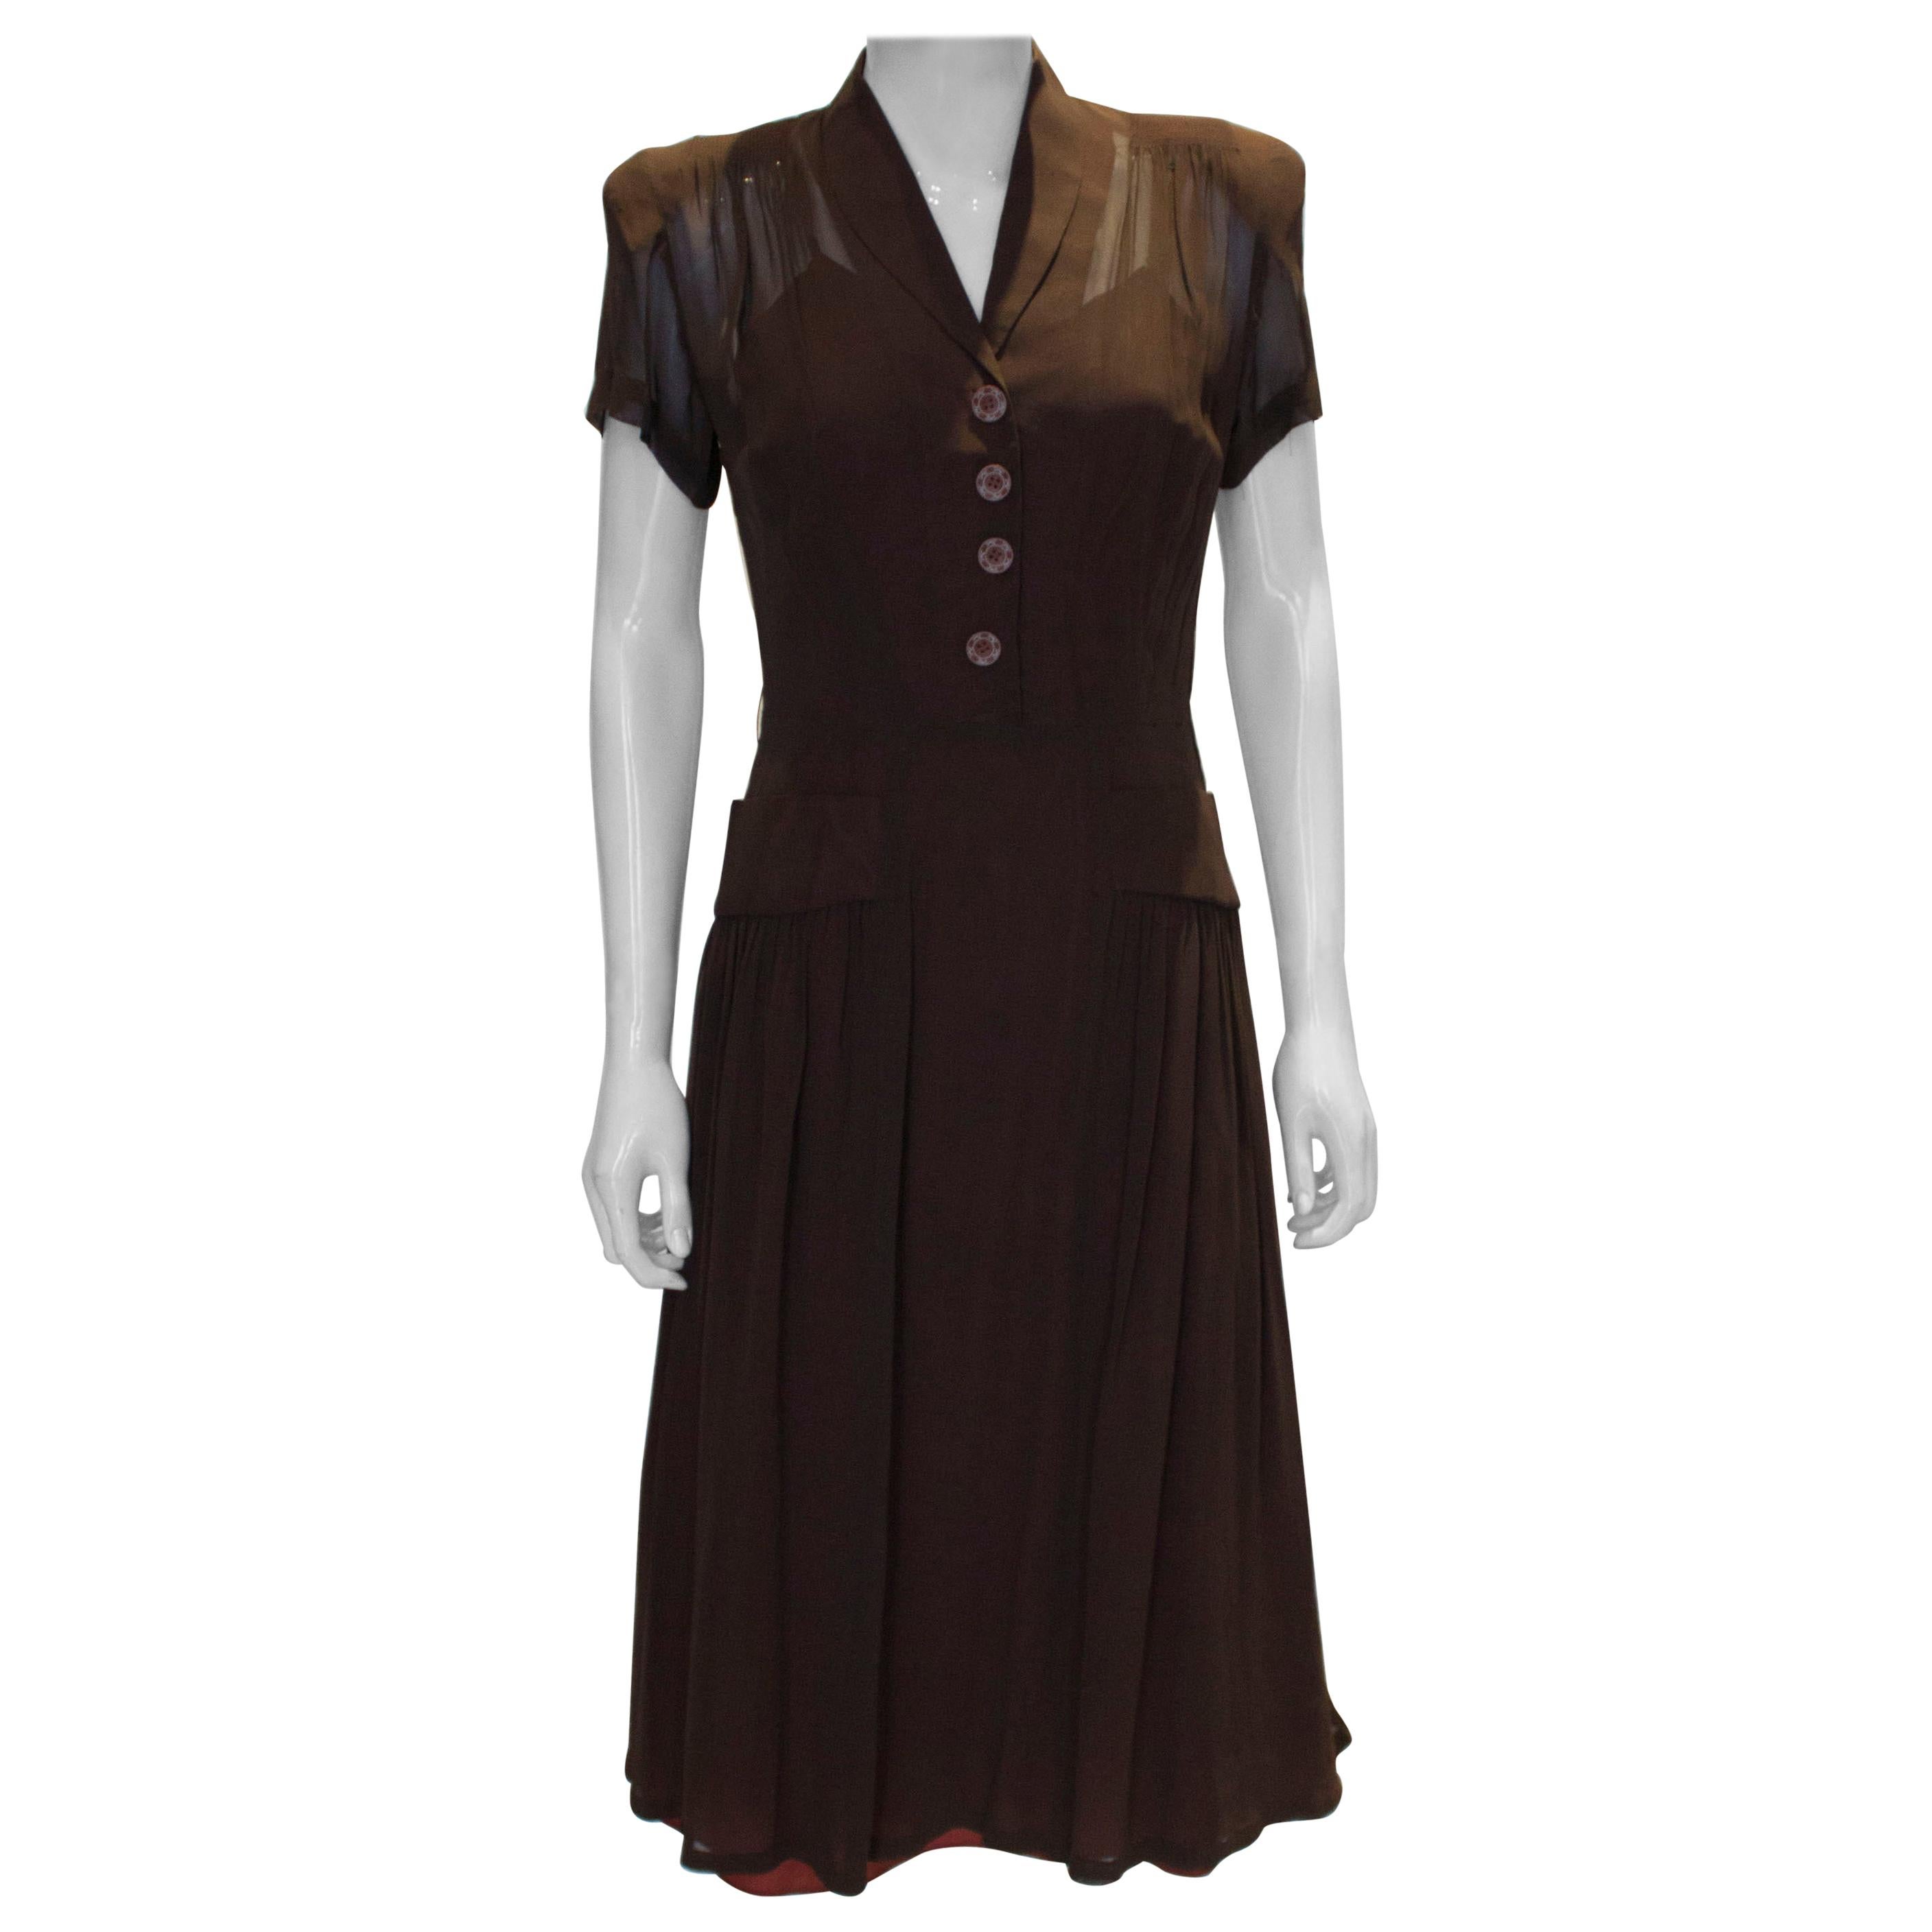 Vintage Brown 1940s Dress For Sale